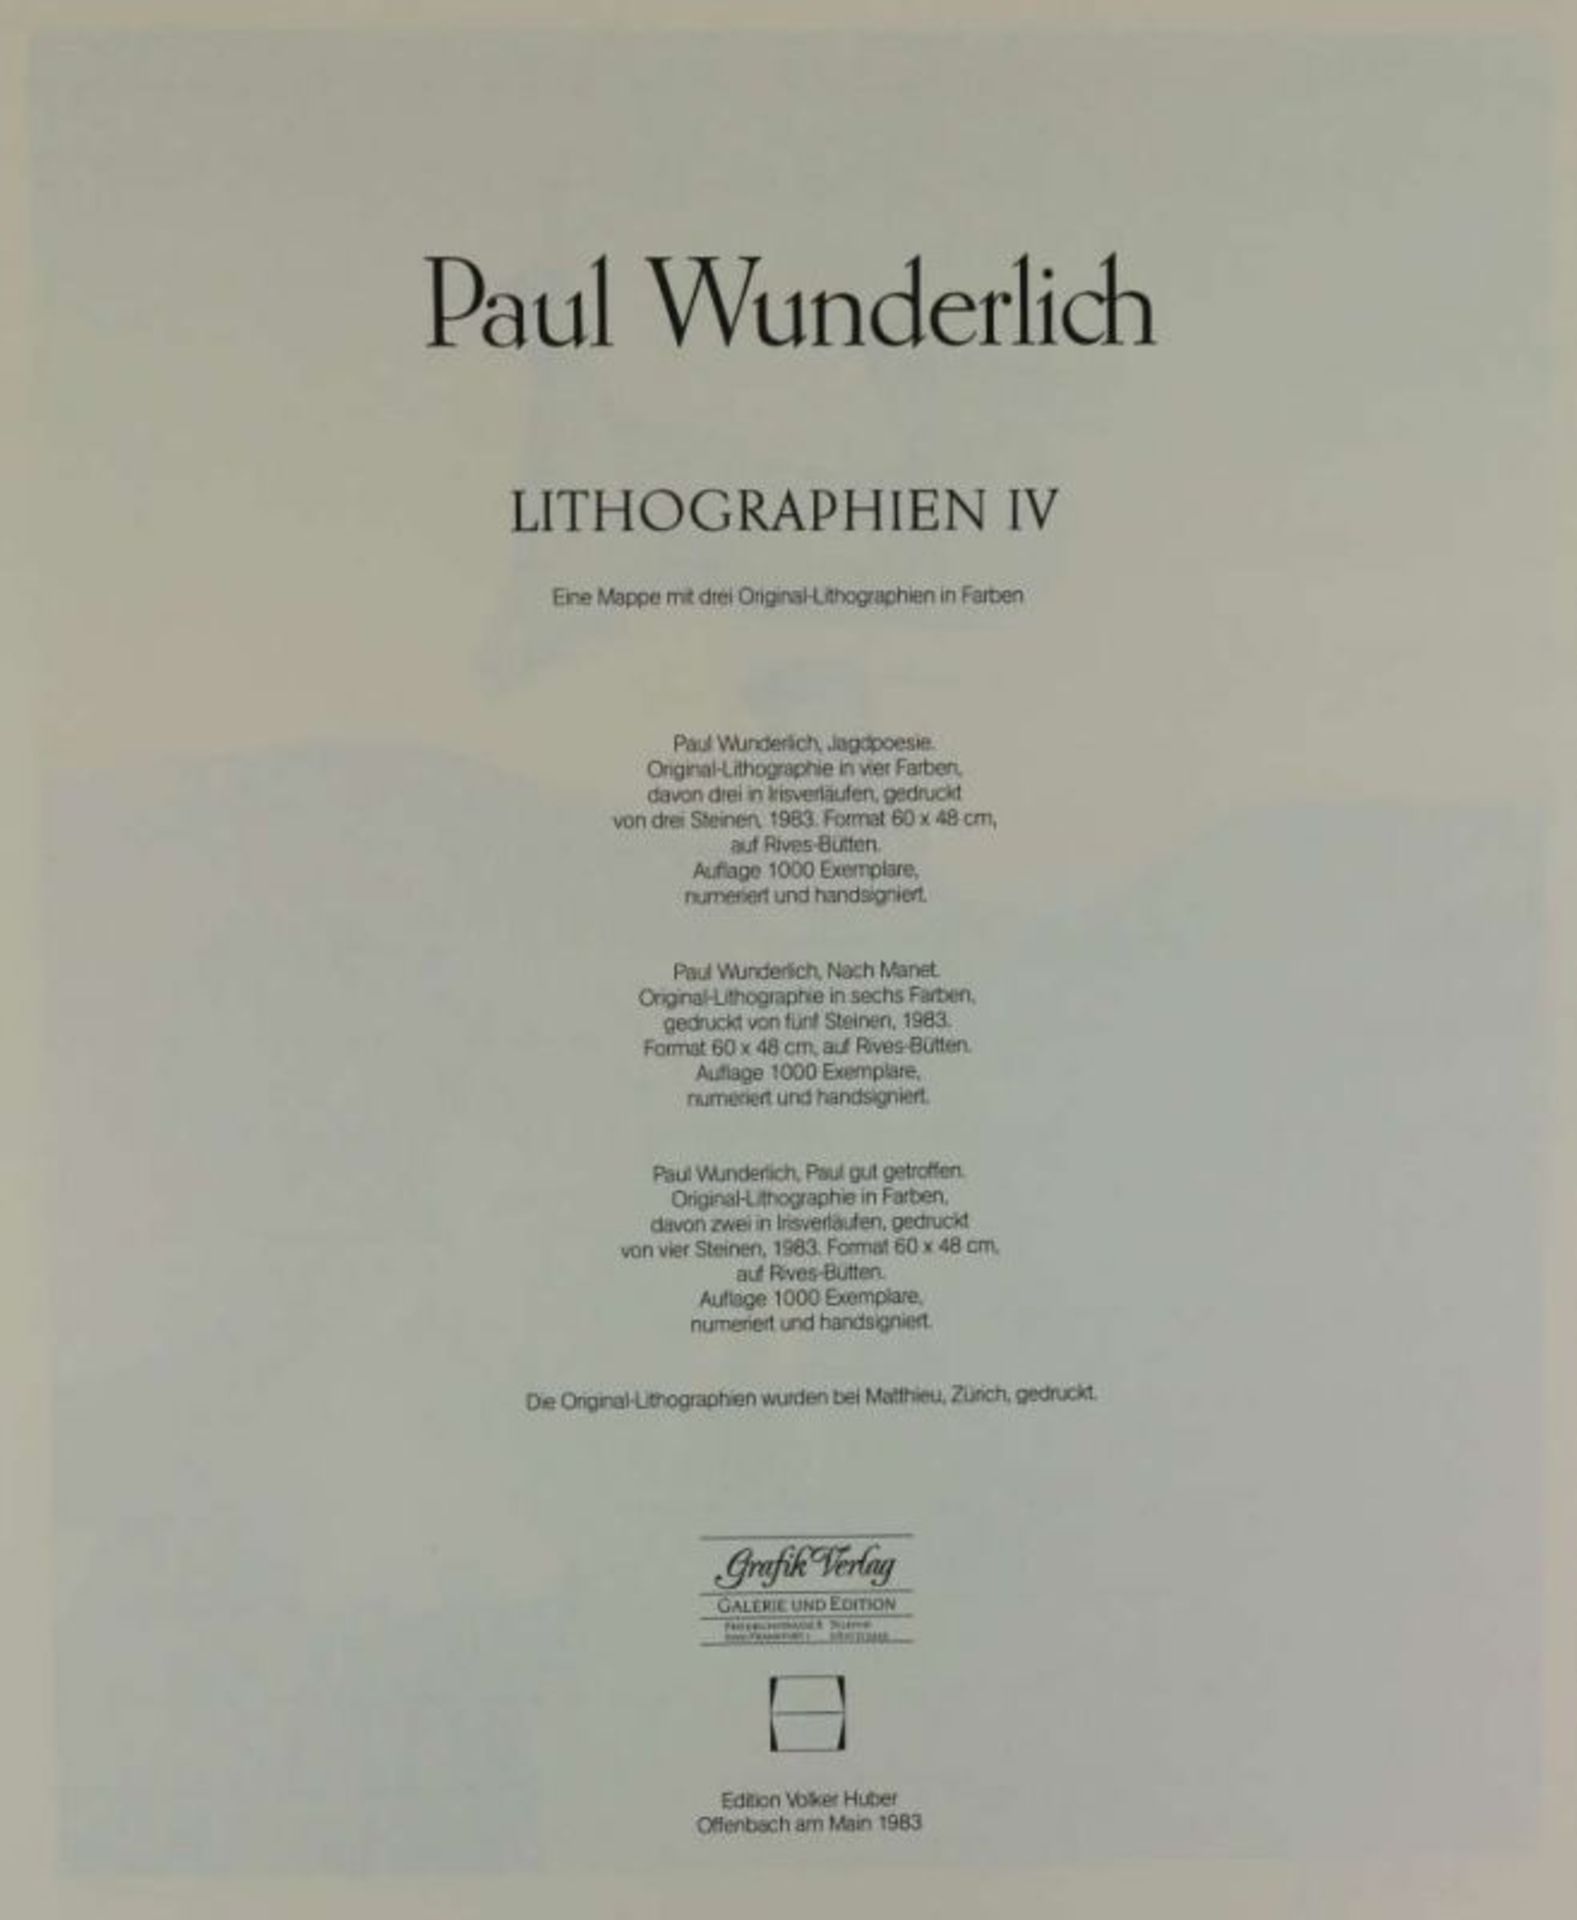 Paul Wunderlich, Lithographien IV, Edition Volker Huber Frankfurt 1983, drei Blatt [...] - Bild 5 aus 8